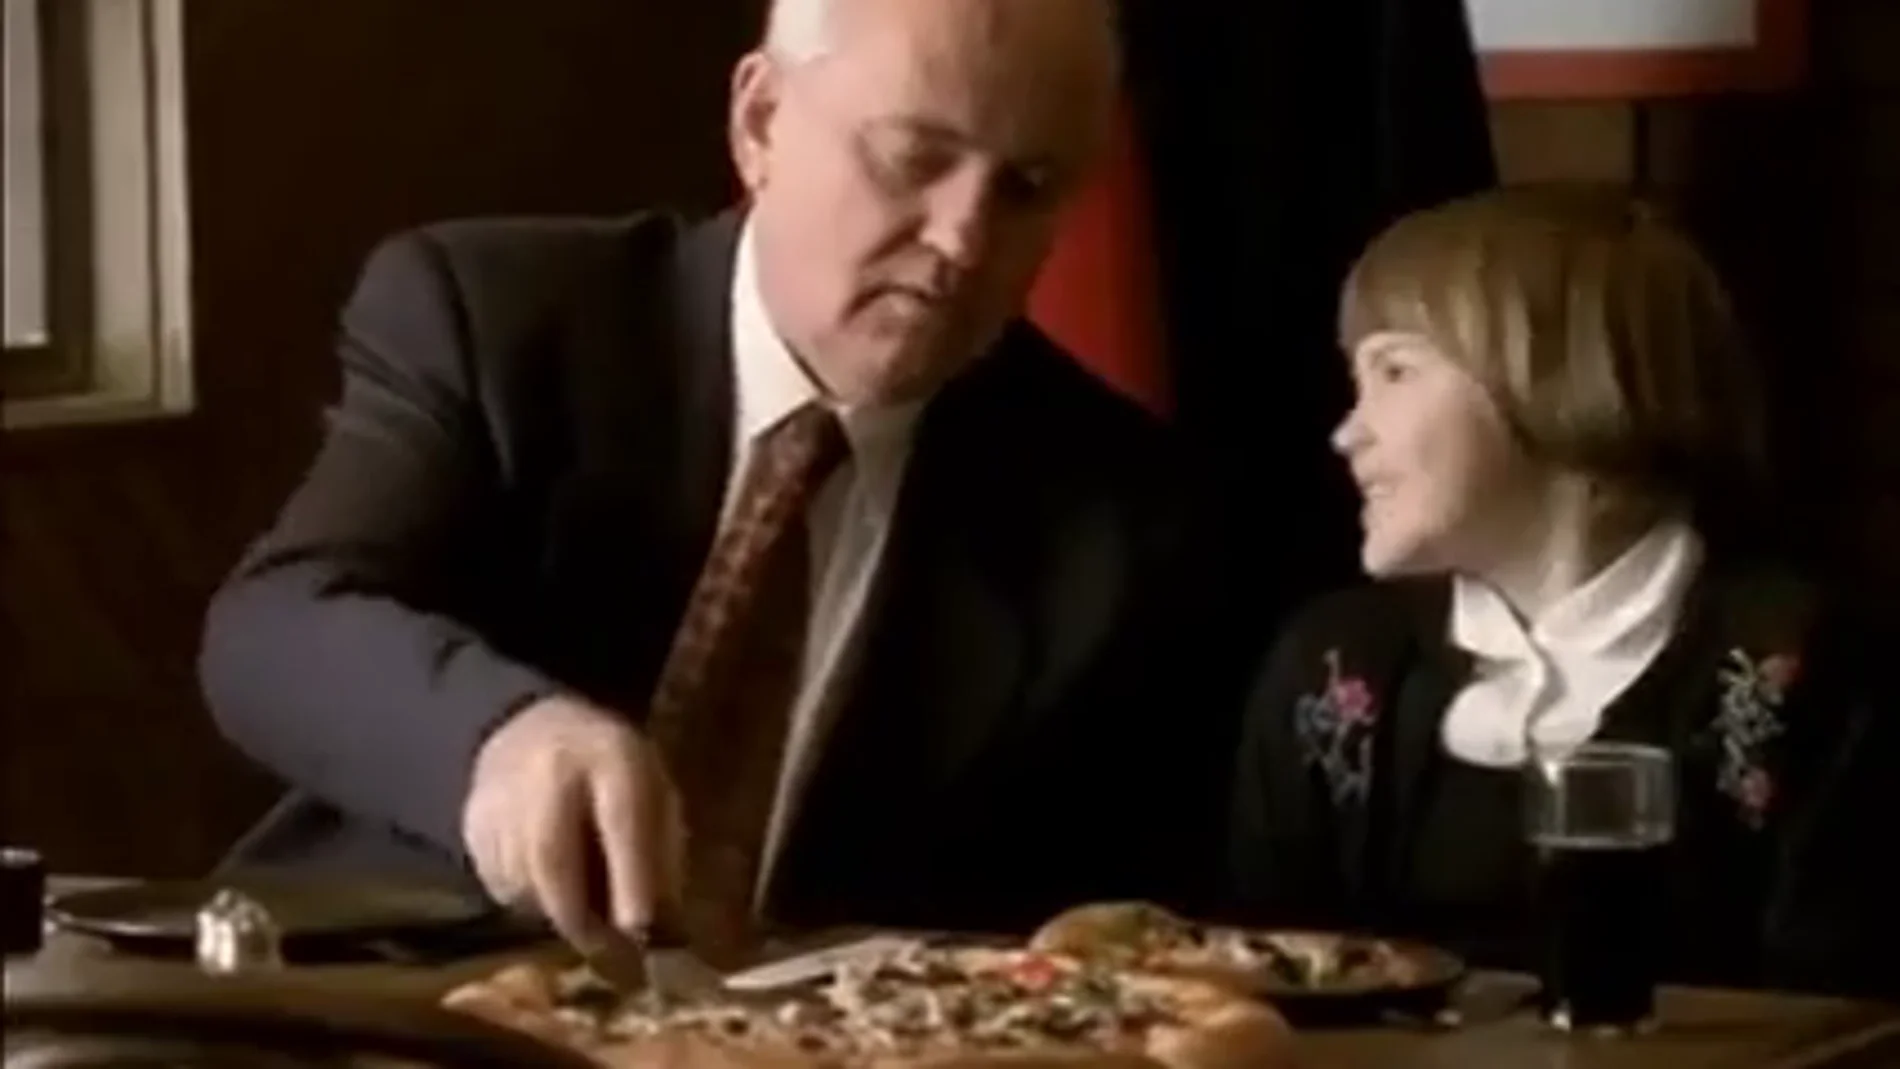 El anuncio aperturista de Pizza Hut que protagonizó Gorbachov en 1998